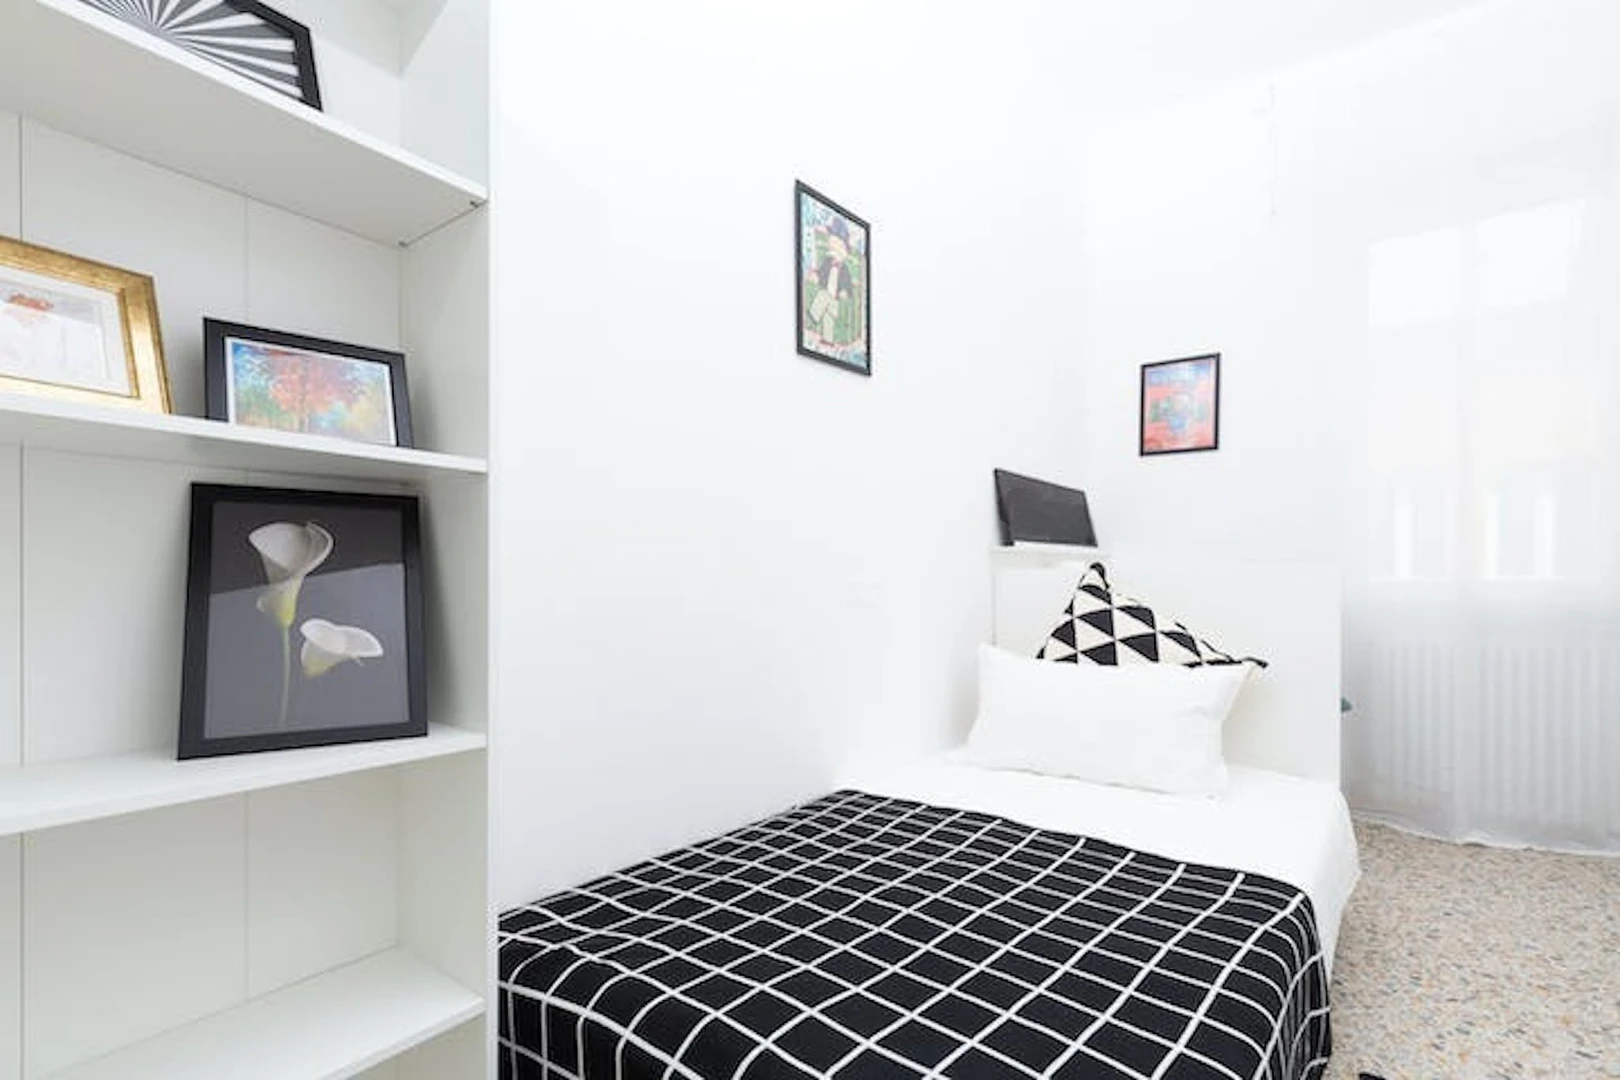 Habitación en alquiler con cama doble Rimini